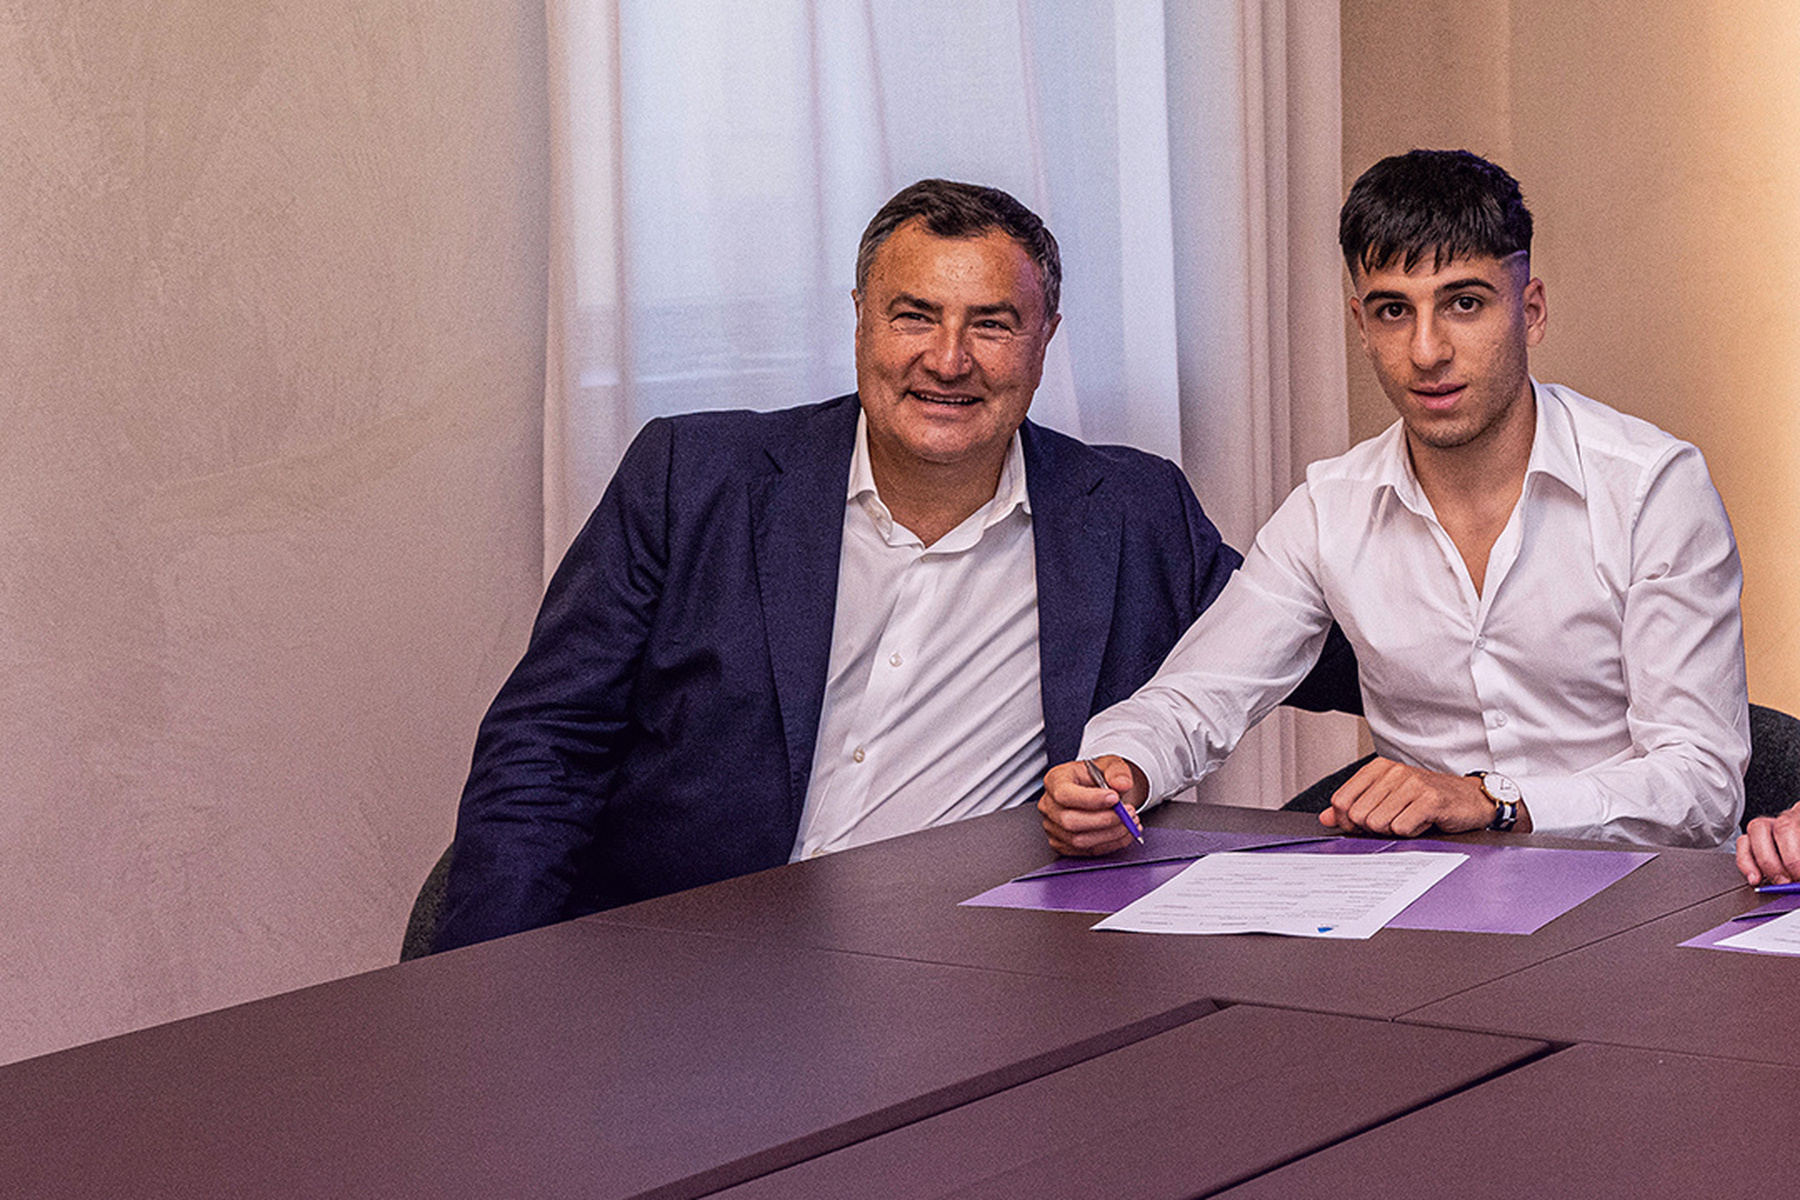 Fiorentina in talks to sign Empoli's Fabiano Parisi - Get Italian